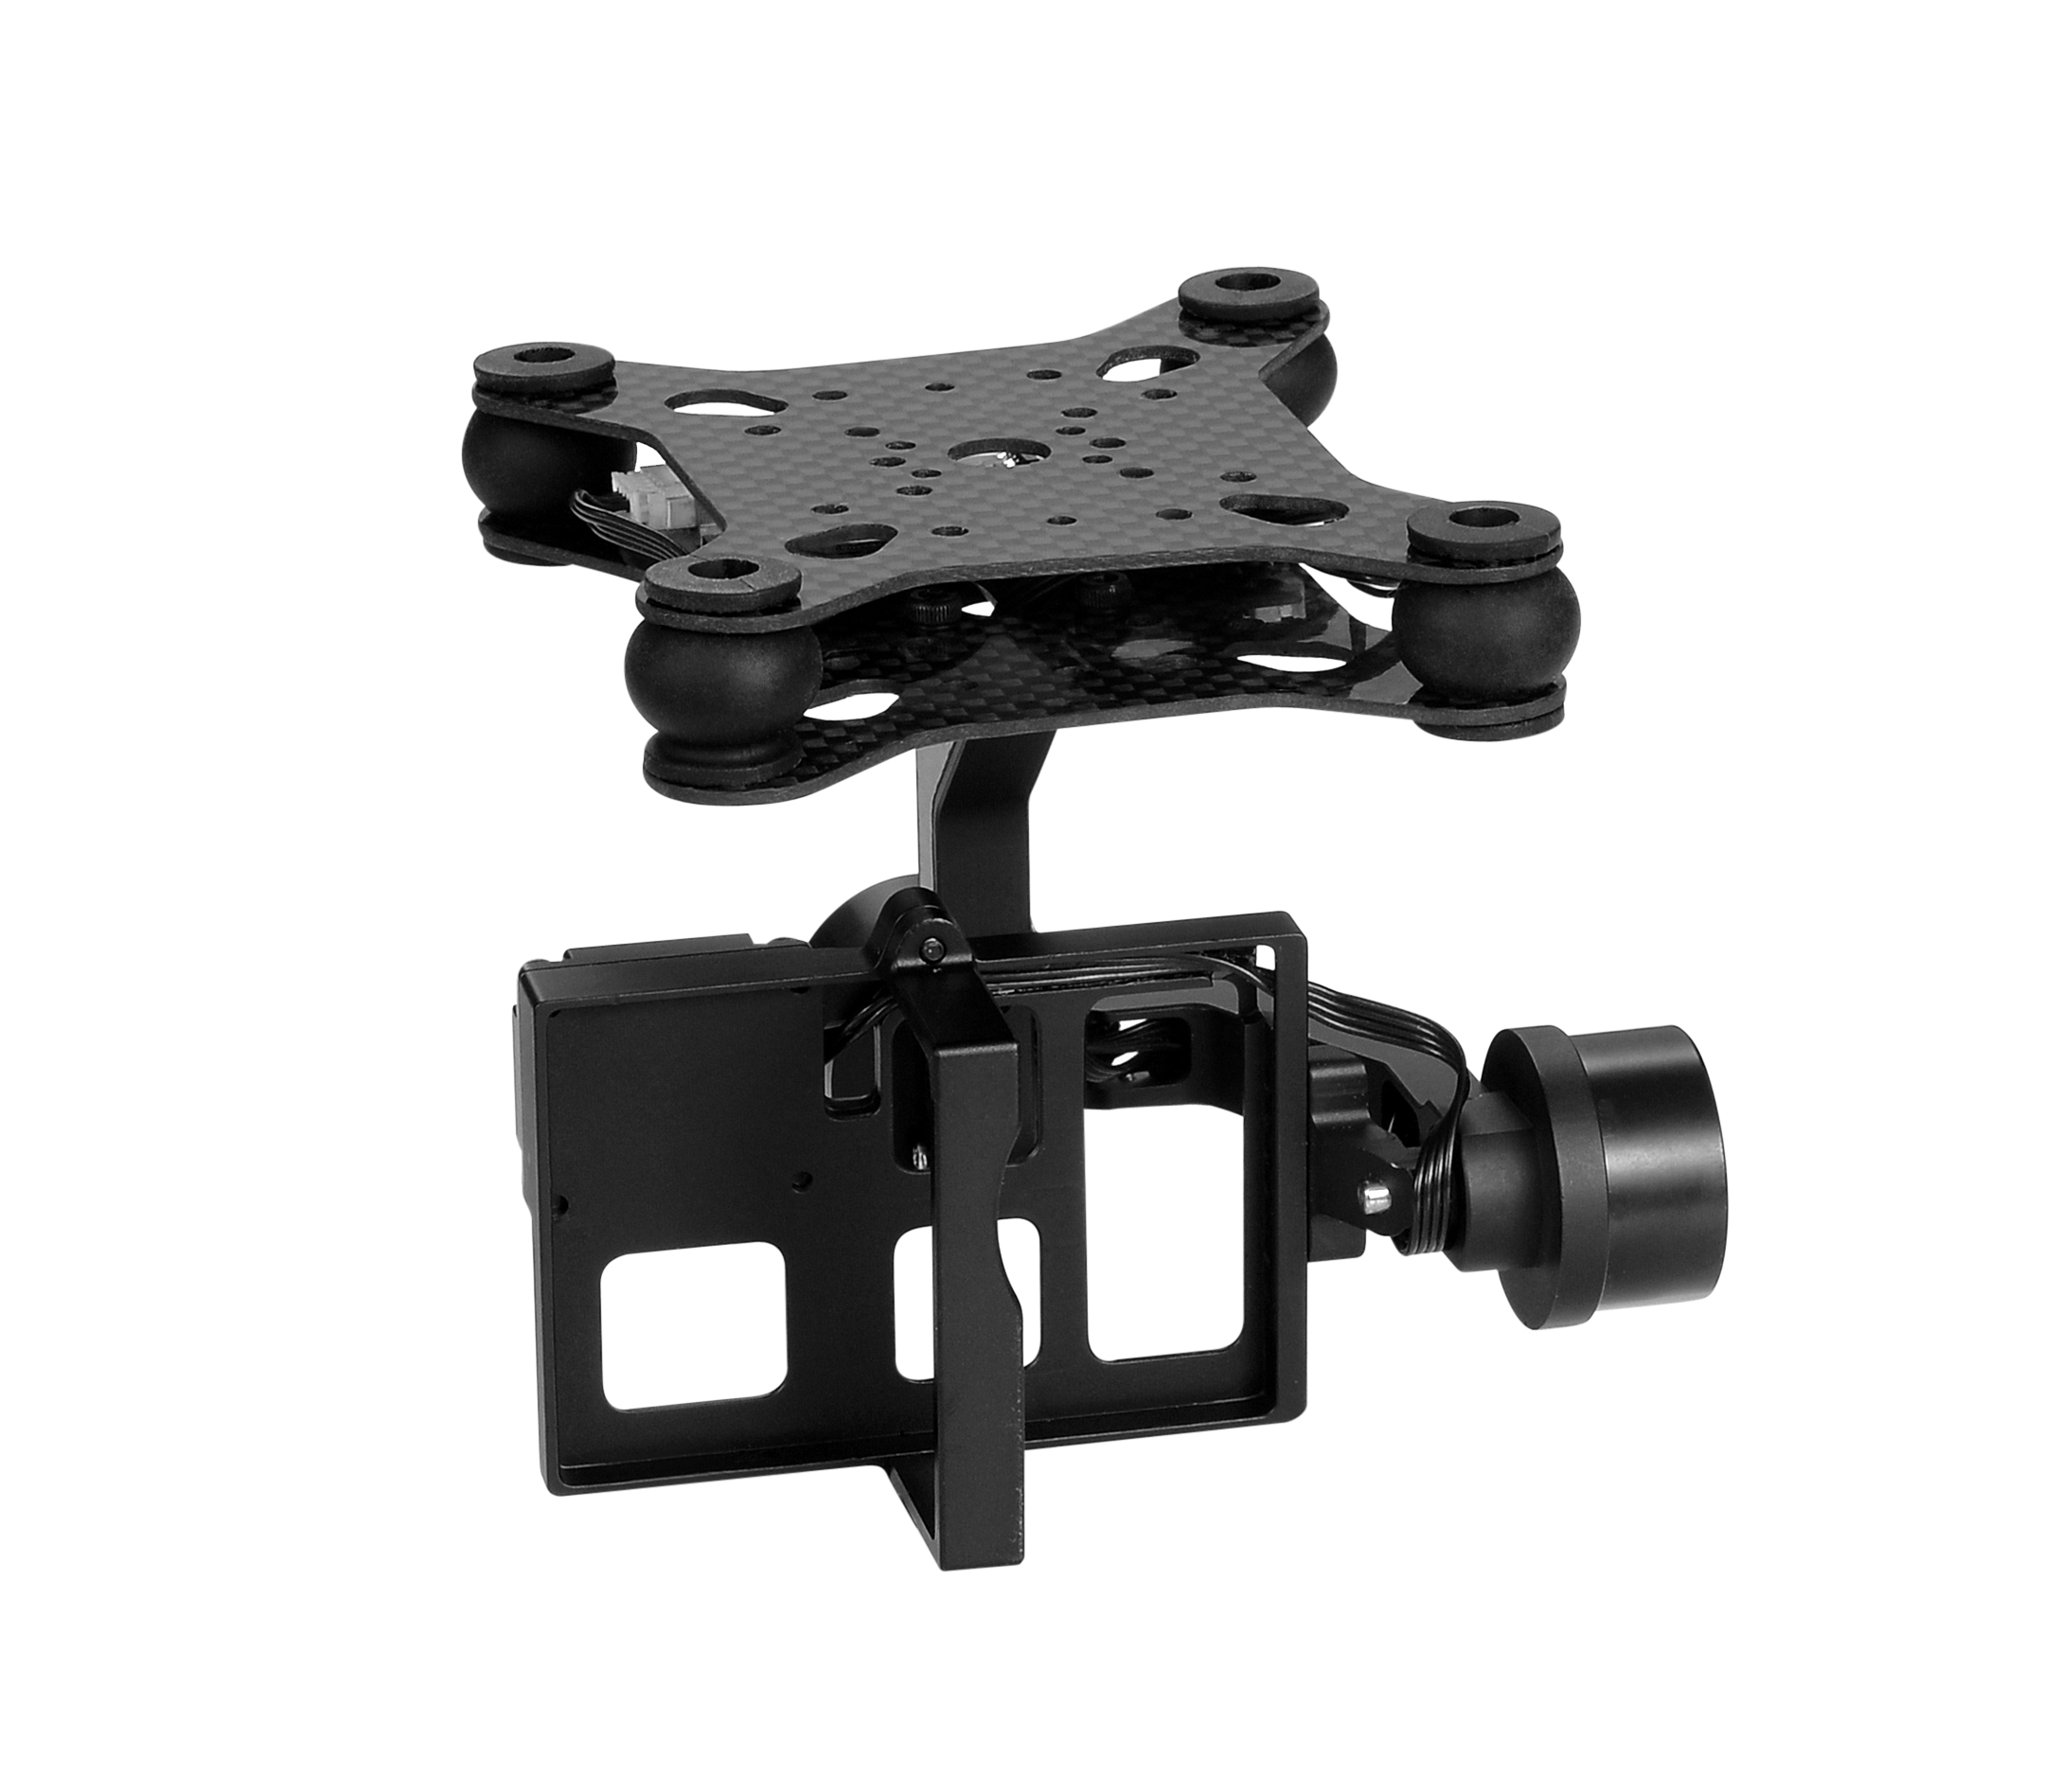 ドローン Walkera G-2D 2-Axis Brushless Camera Gimbal for GoPro 3